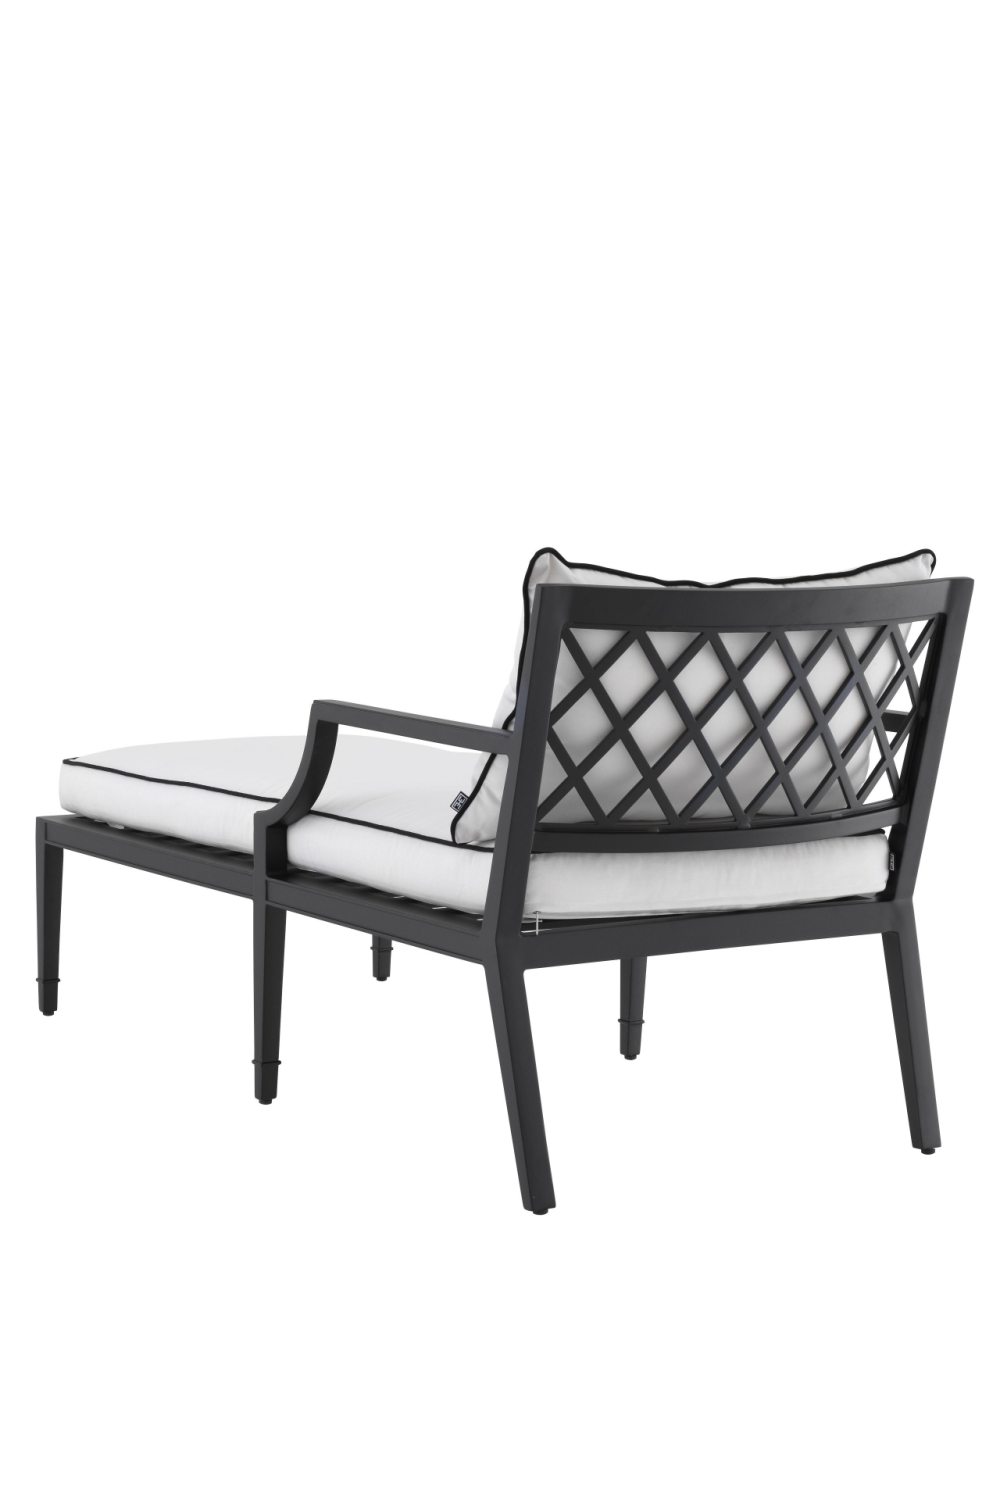 Chaise Outdoor Lounge Chair | Eichholtz Bella Vista | Oroa.com